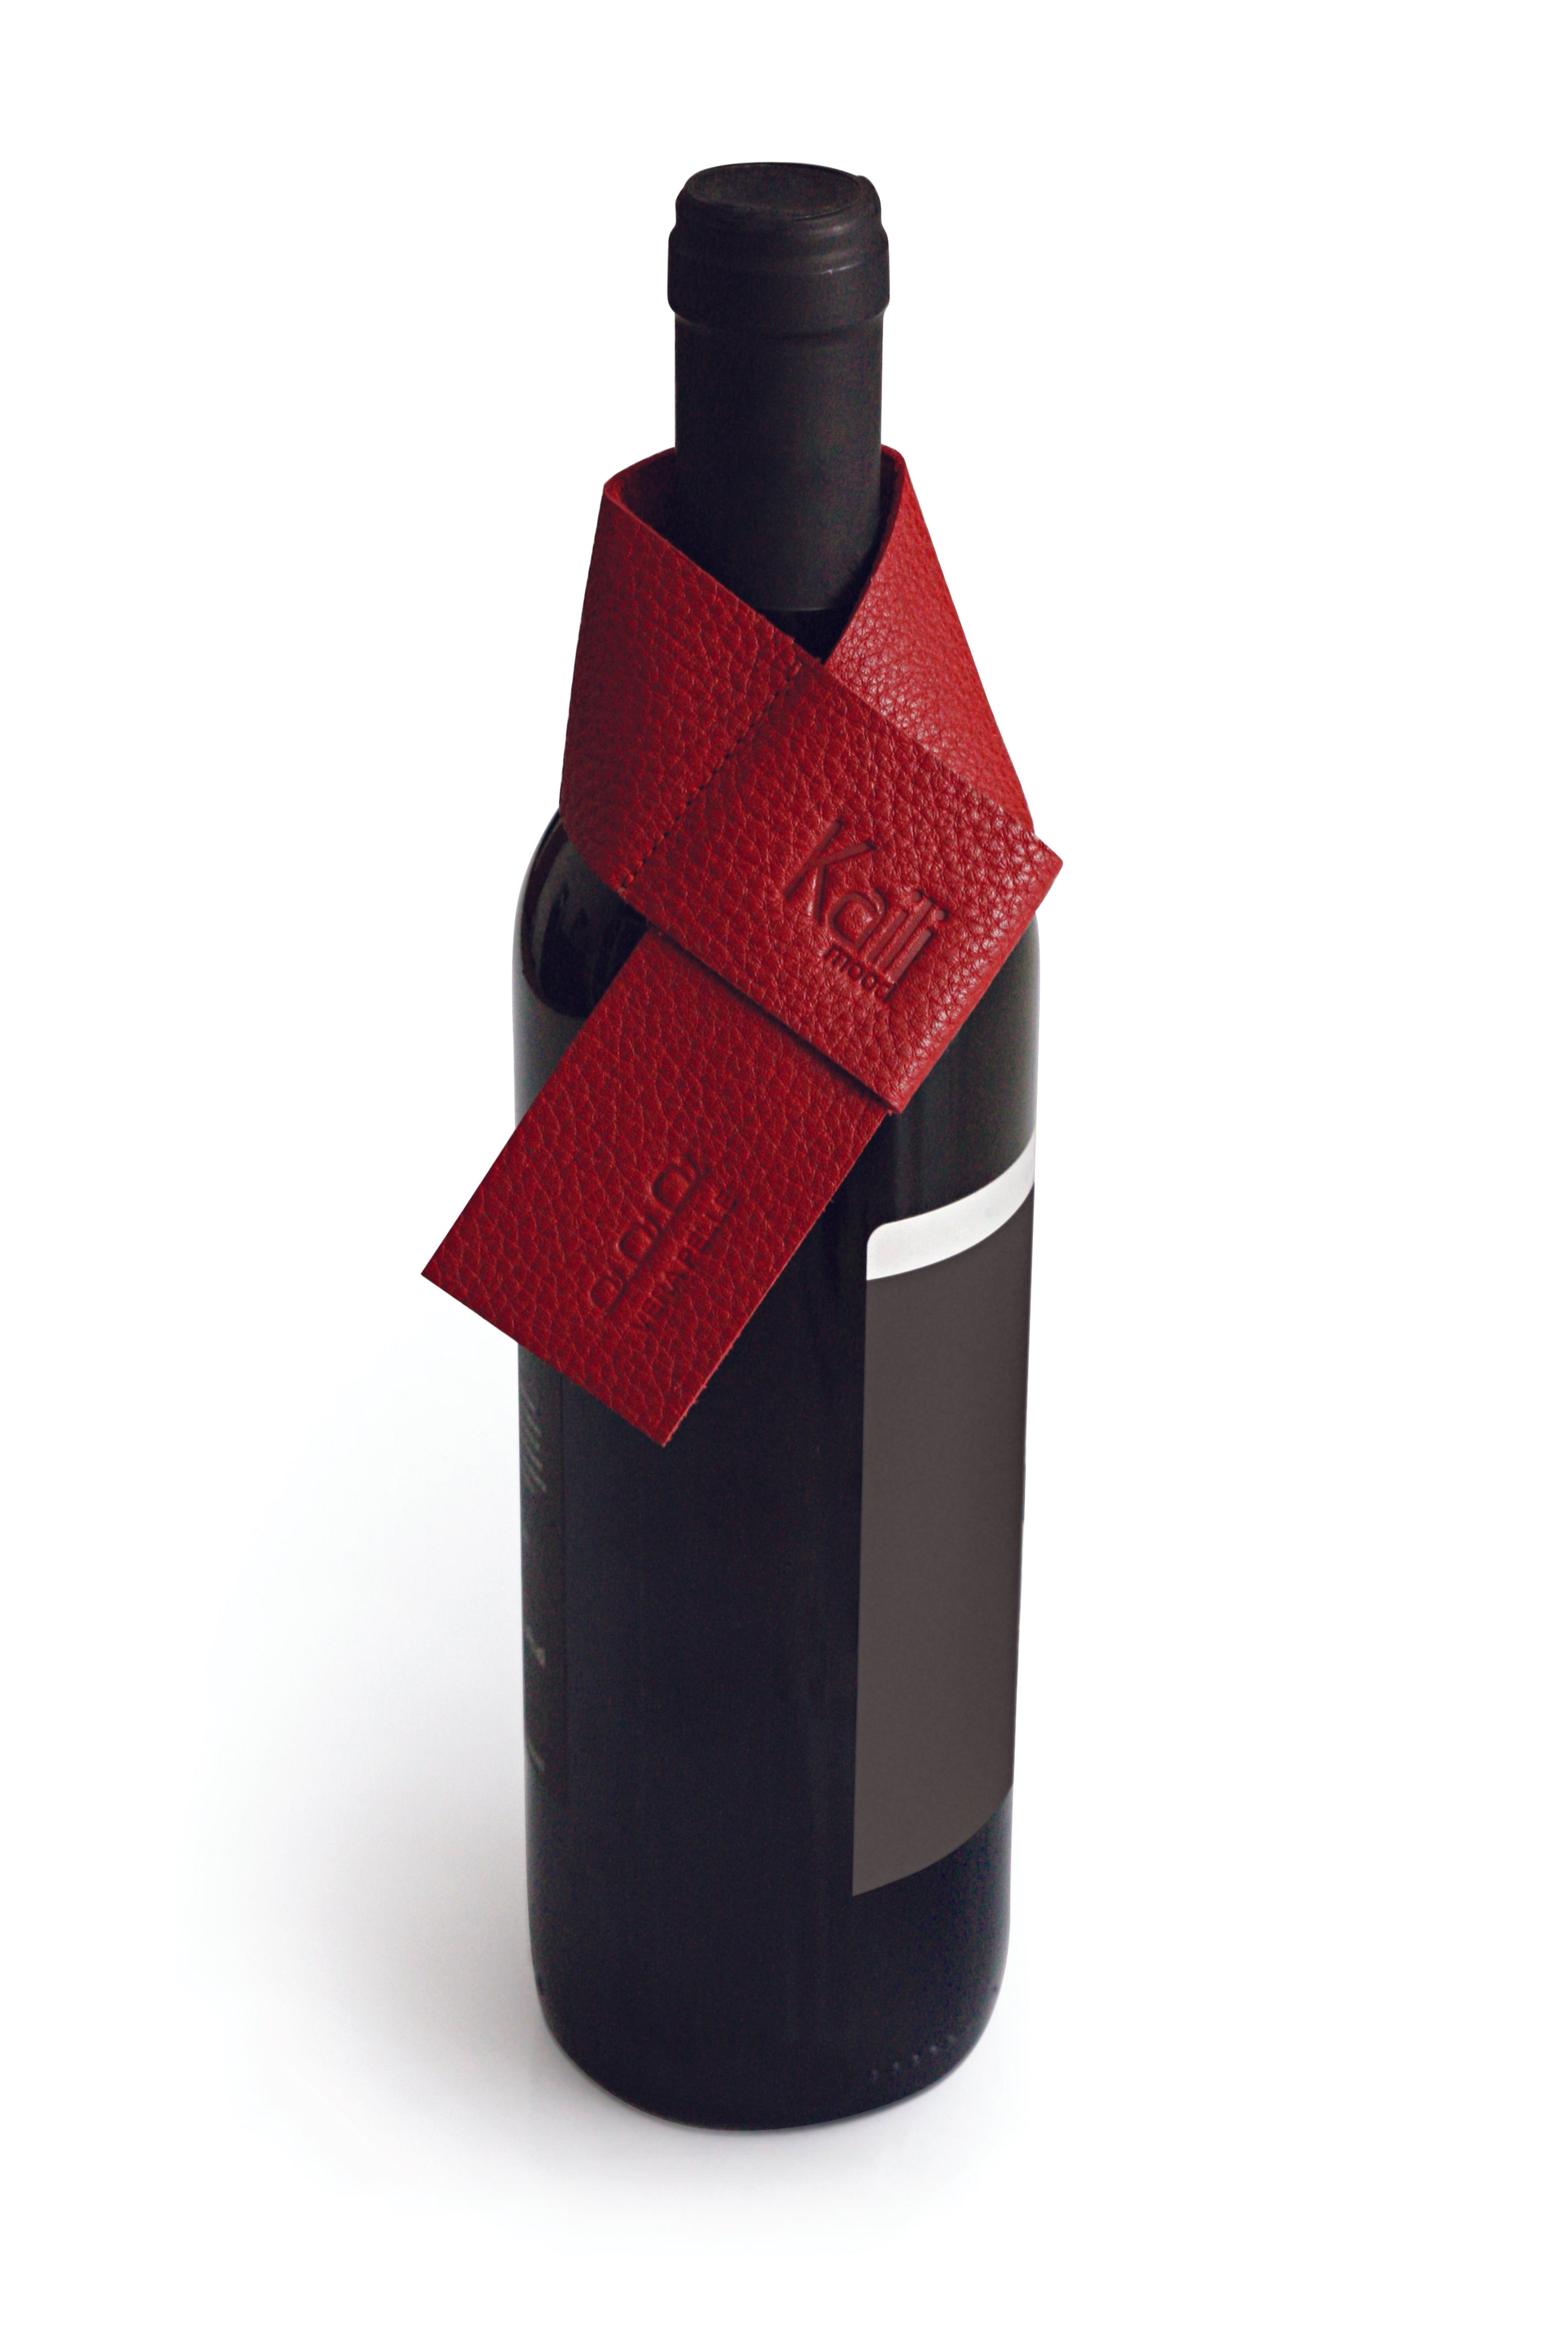 K0010VB | Salvagoccia per Bottiglia Made in Italy in Vera Pelle pieno fiore, grana dollaro - Colore Rosso. Dimensioni: cm 27 x 4 x 0,5.  Confezione: Gift Box rigido fondo/coperchio Kailimood.store